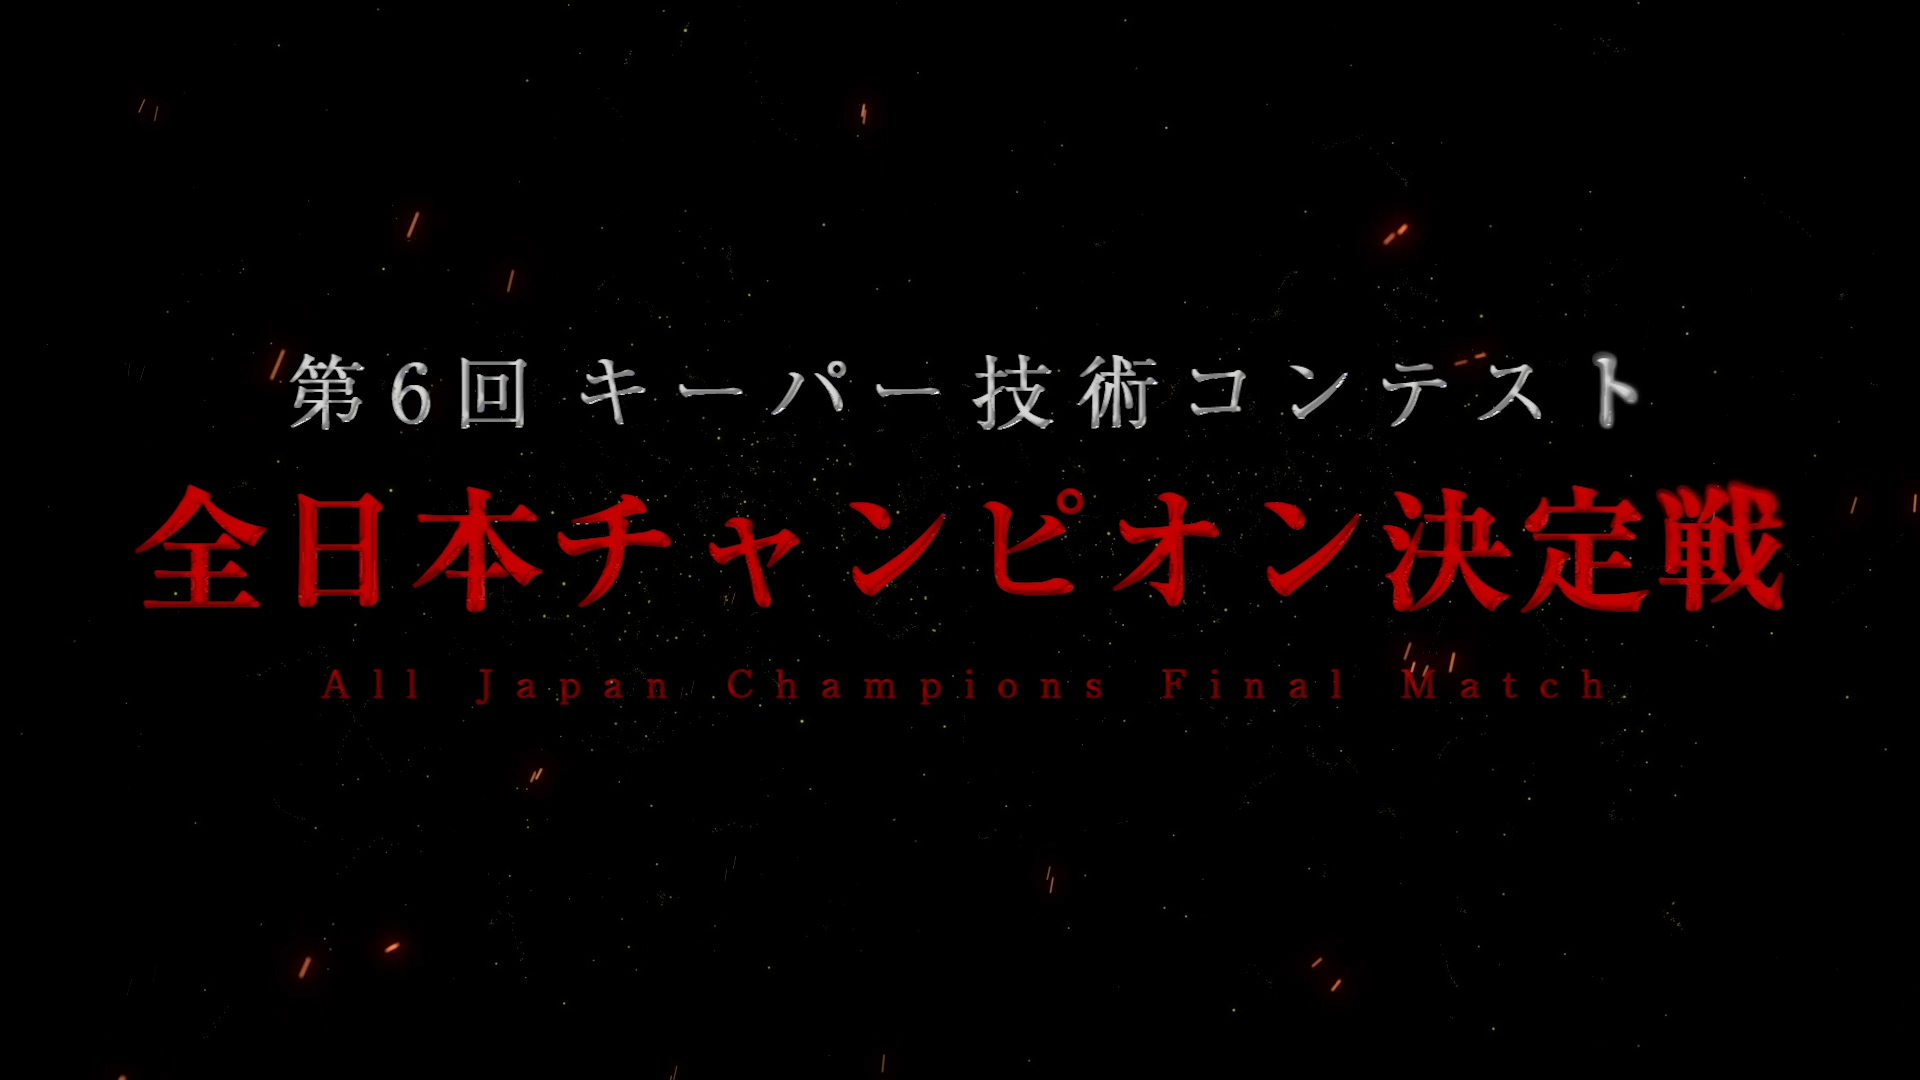 2019年キーパー技術コンテスト 全日本チャンピオン決定戦